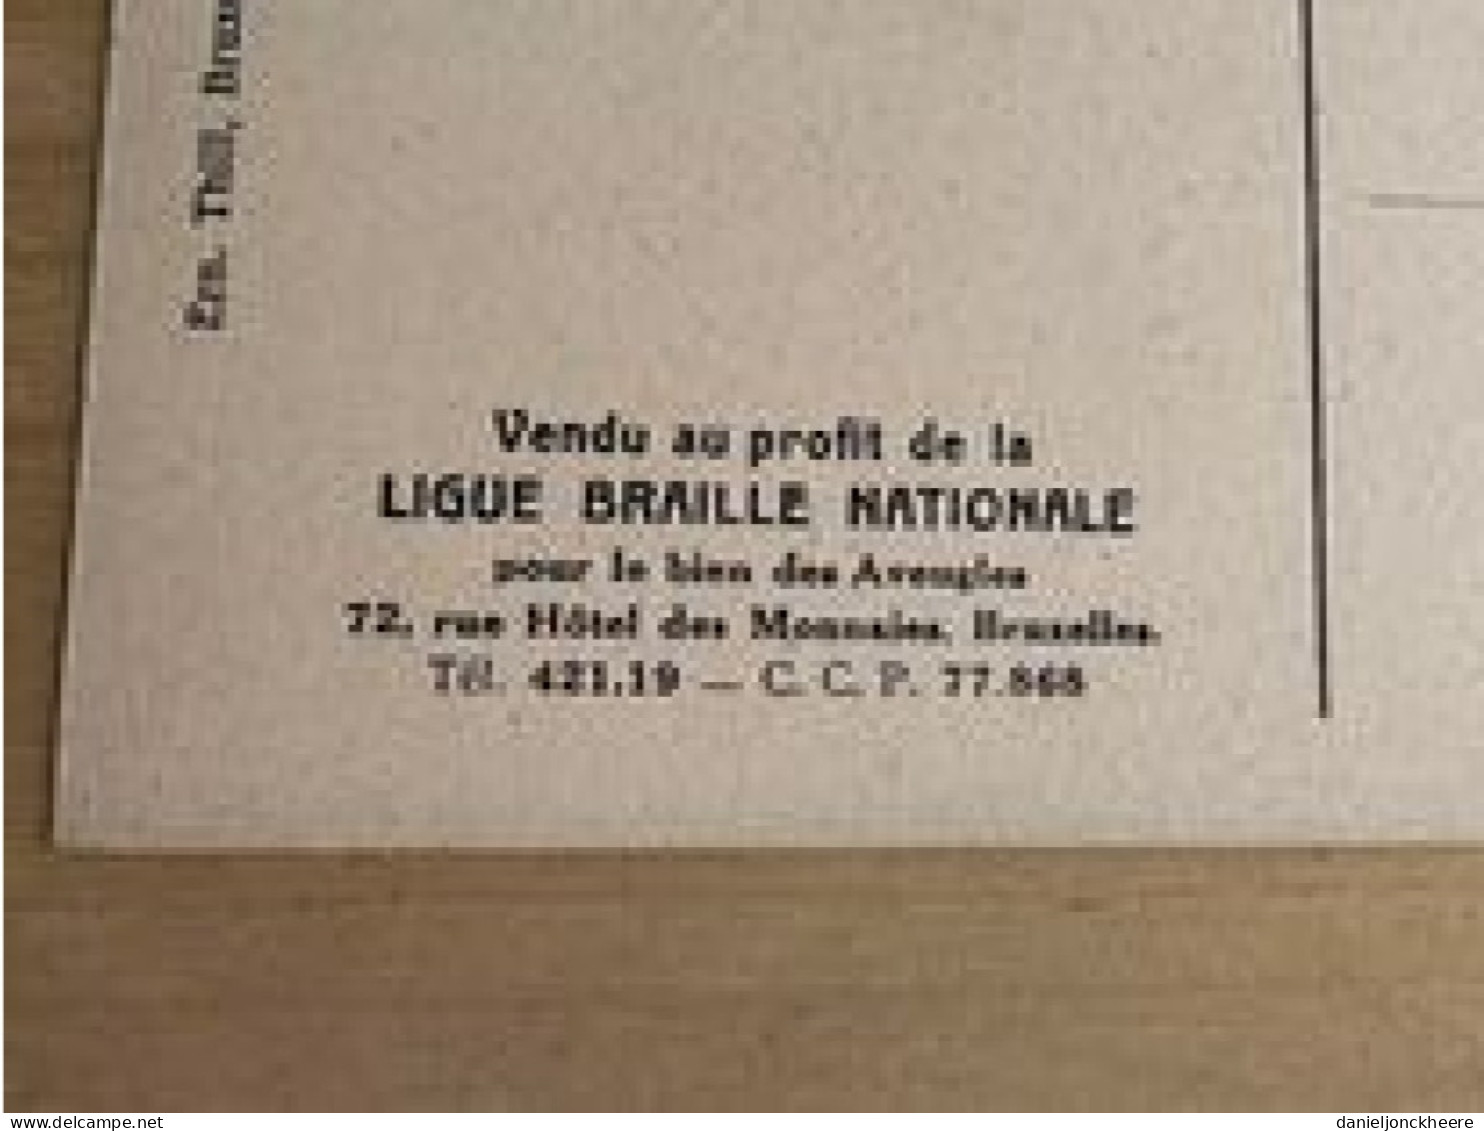 Carte Postale Postkaart Postcard Portrait Du Senateur X Par Cecile Douard Mons 1897 Ligue Braille Nationale - Hombres Políticos Y Militares